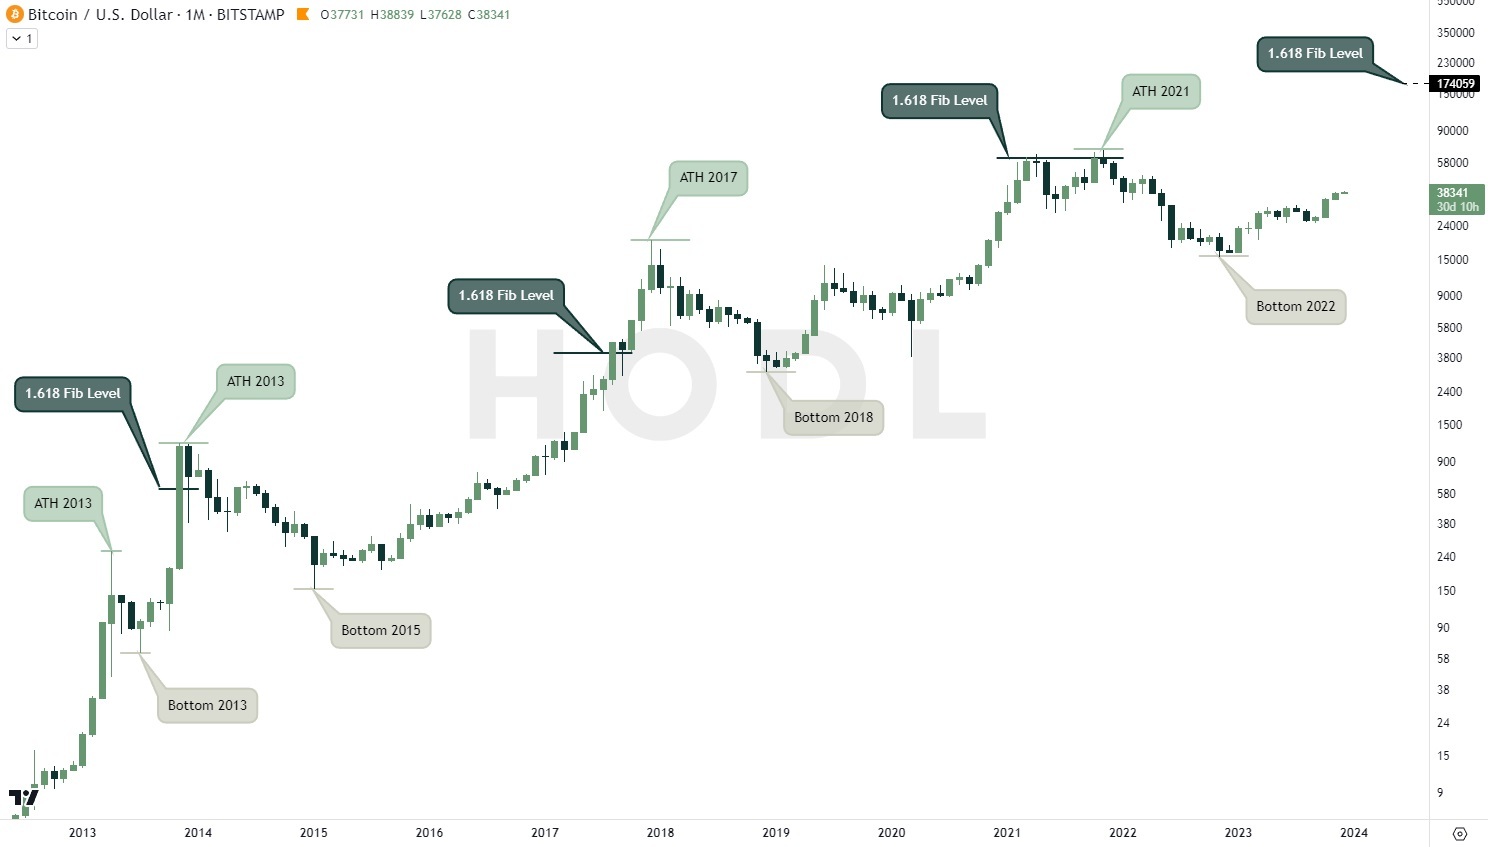 Fibonacci Bitcoin market cycle 2013 - 2024